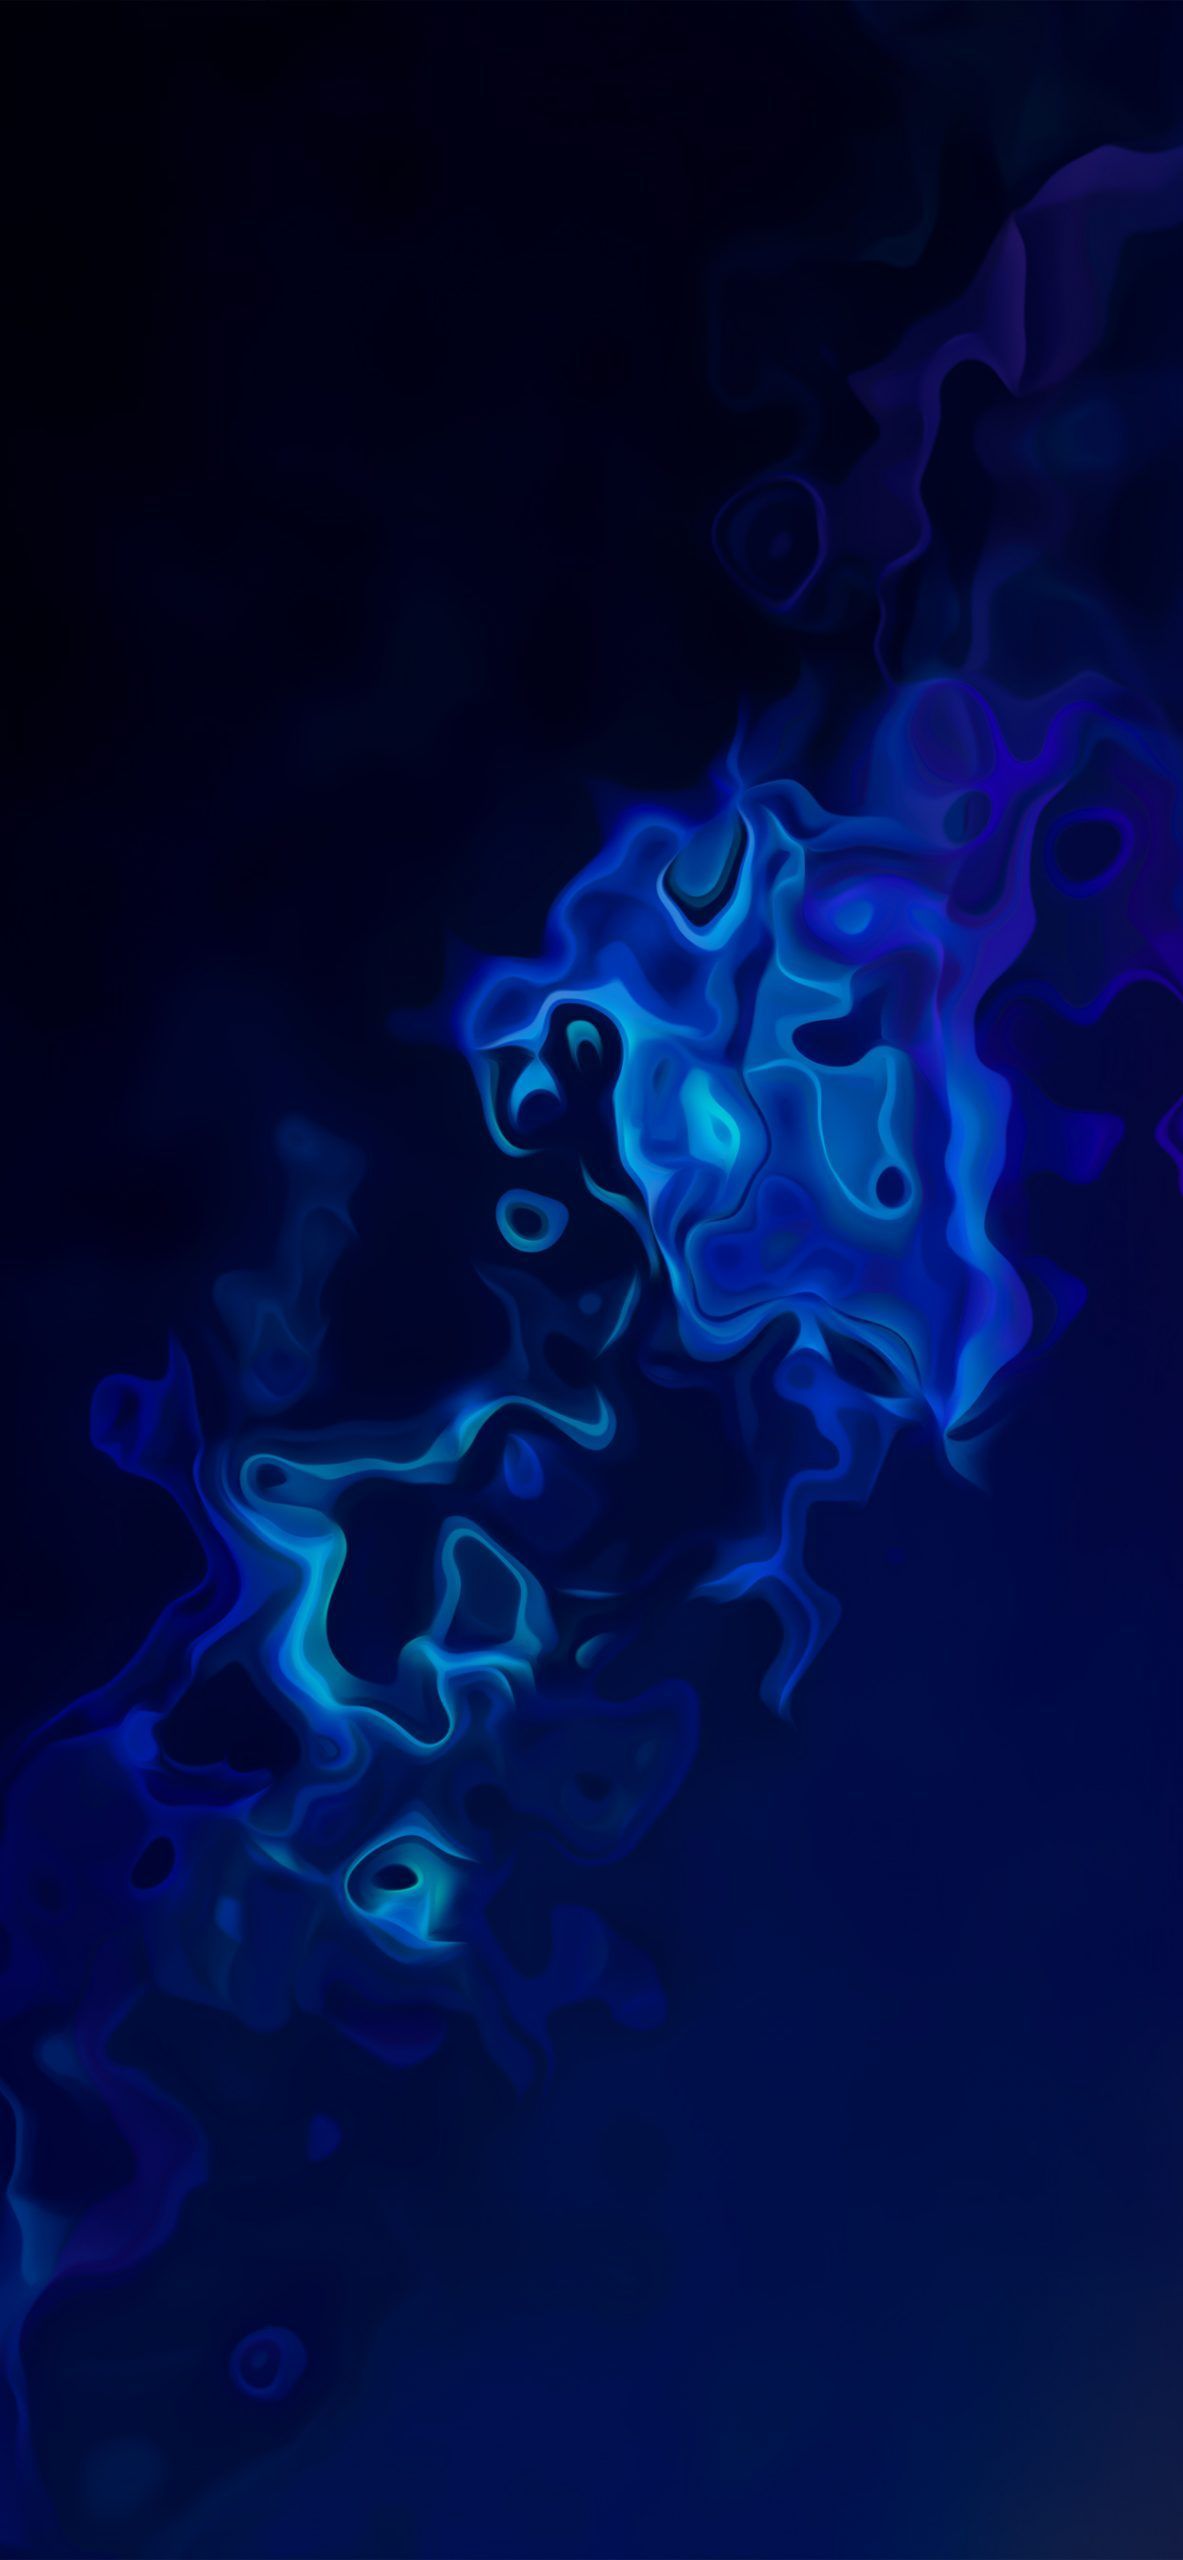 Dark blue abstract gradient on Twitter. Dark blue wallpaper, Blue aesthetic dark, Blue aesthetic grunge